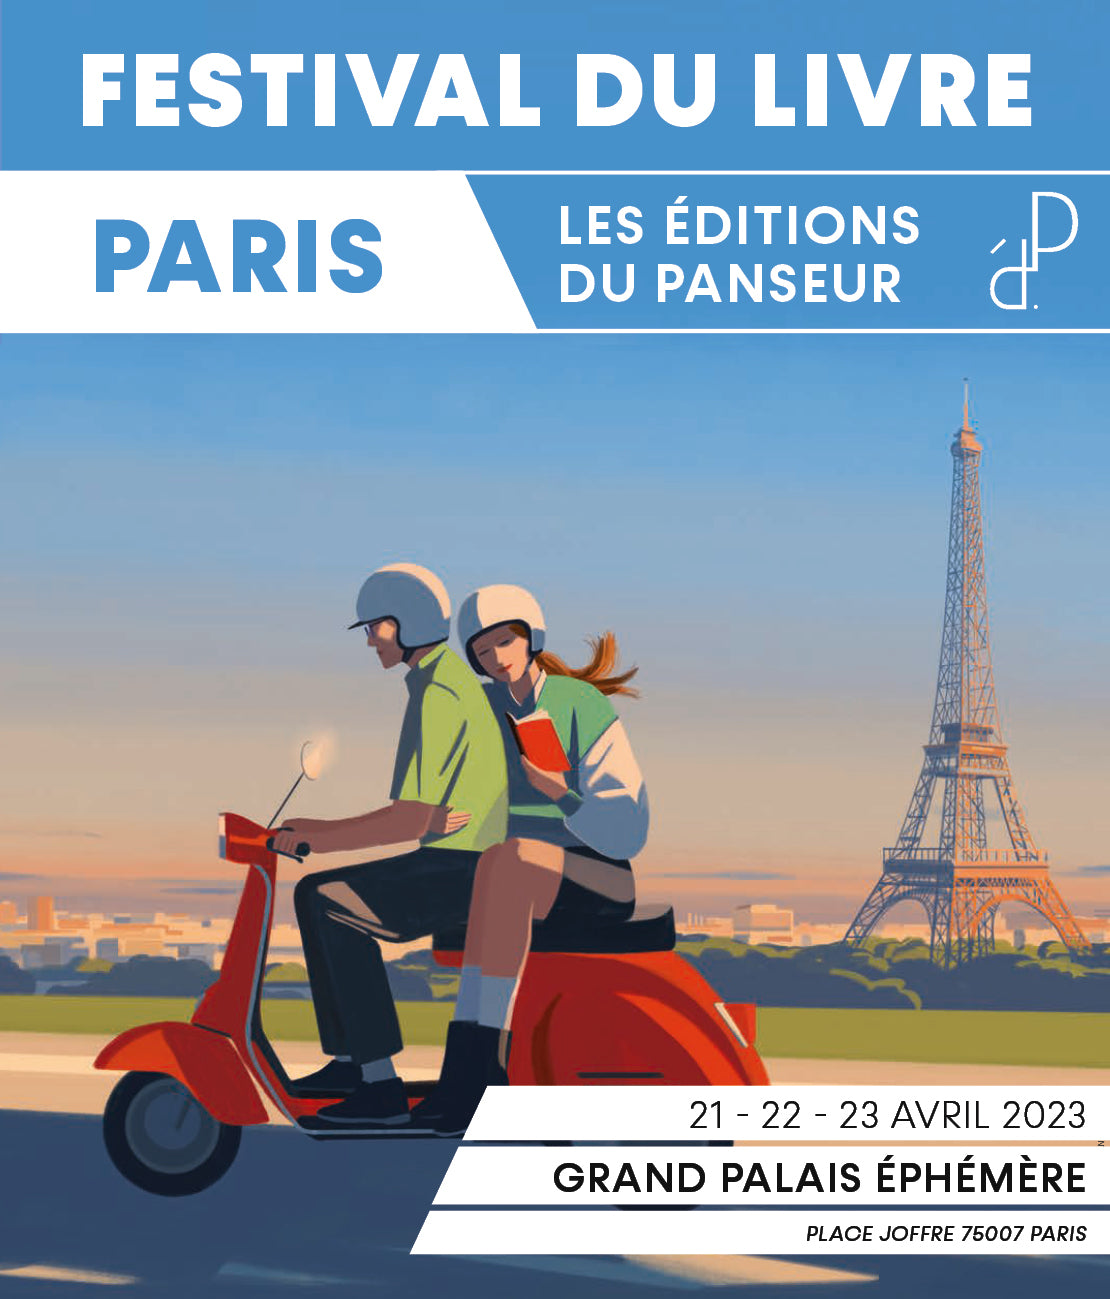 // Festival du livre de Paris 21, 22, 23 avril / Demandez le programme //